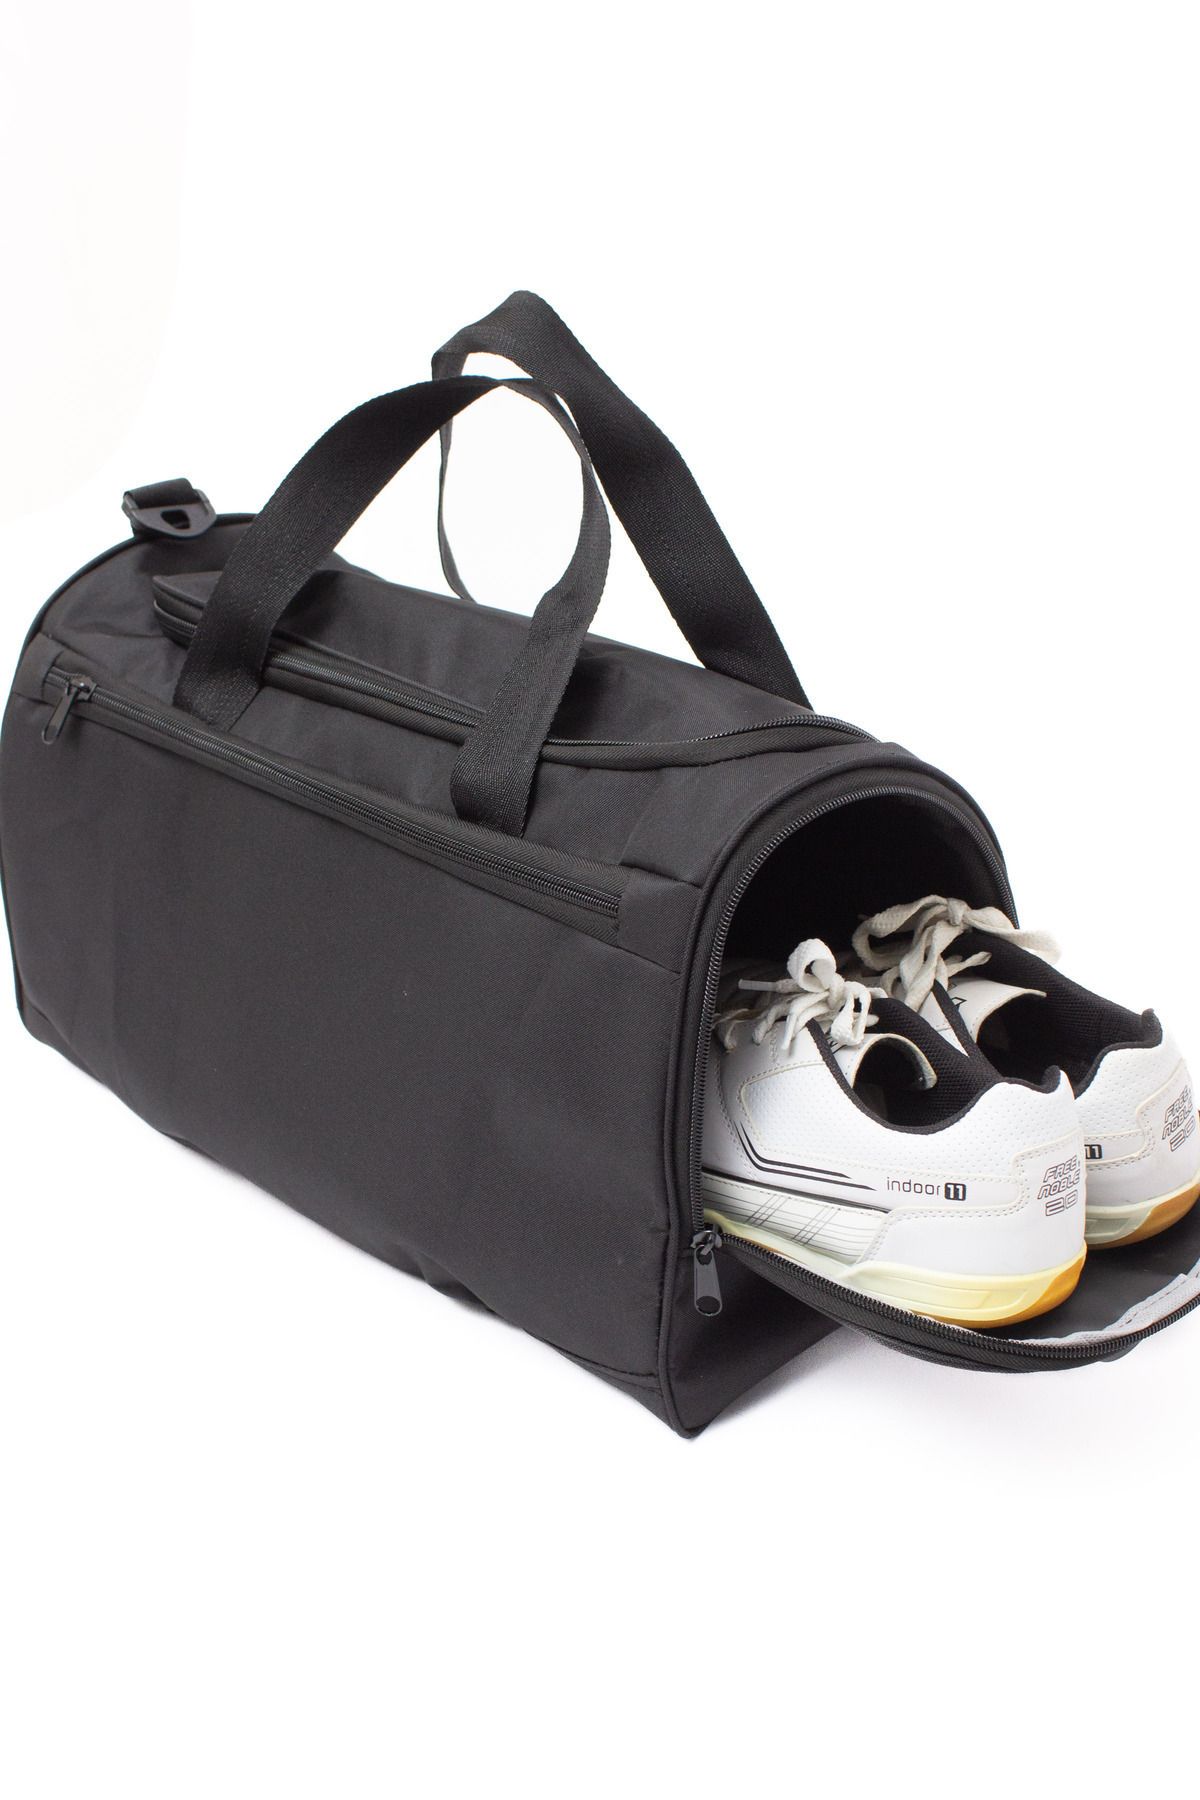 KAFF Siyah Unisex Önü Cepli Ayakkabı Bölmeli Geniş Bavul Seyahat Gym Fitness El ve Spor Çantası